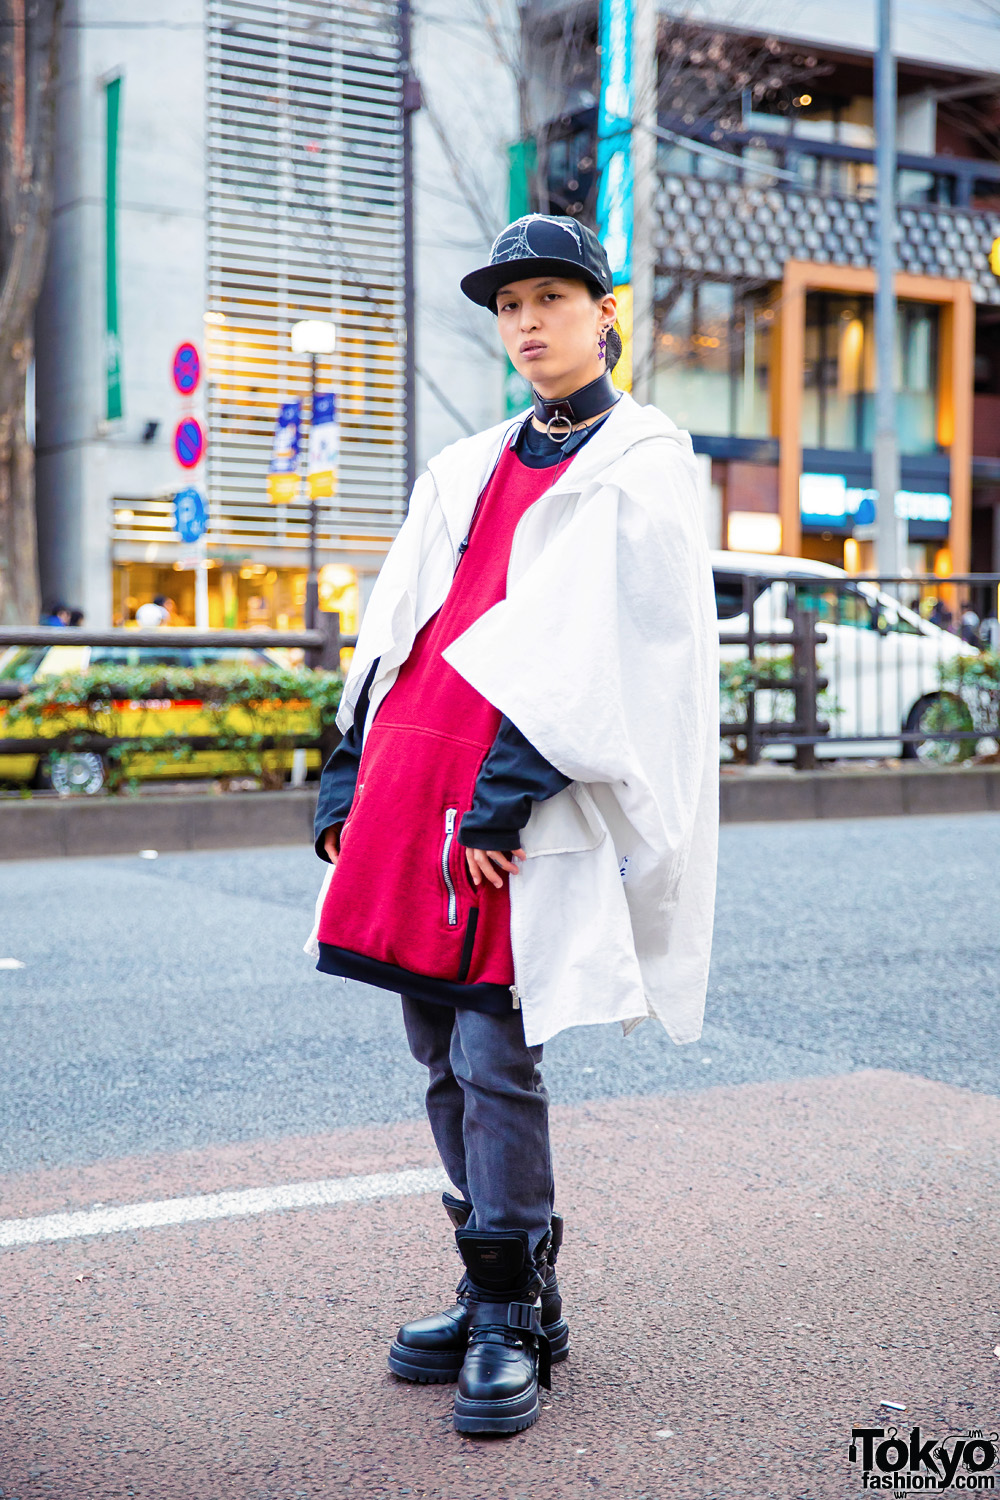 Japanese Streetwear w/ Phire Wire Coat, Asger Juel Larsen Sweater, Coen Jeans, Alice Auaa & Fenty x Puma Boots